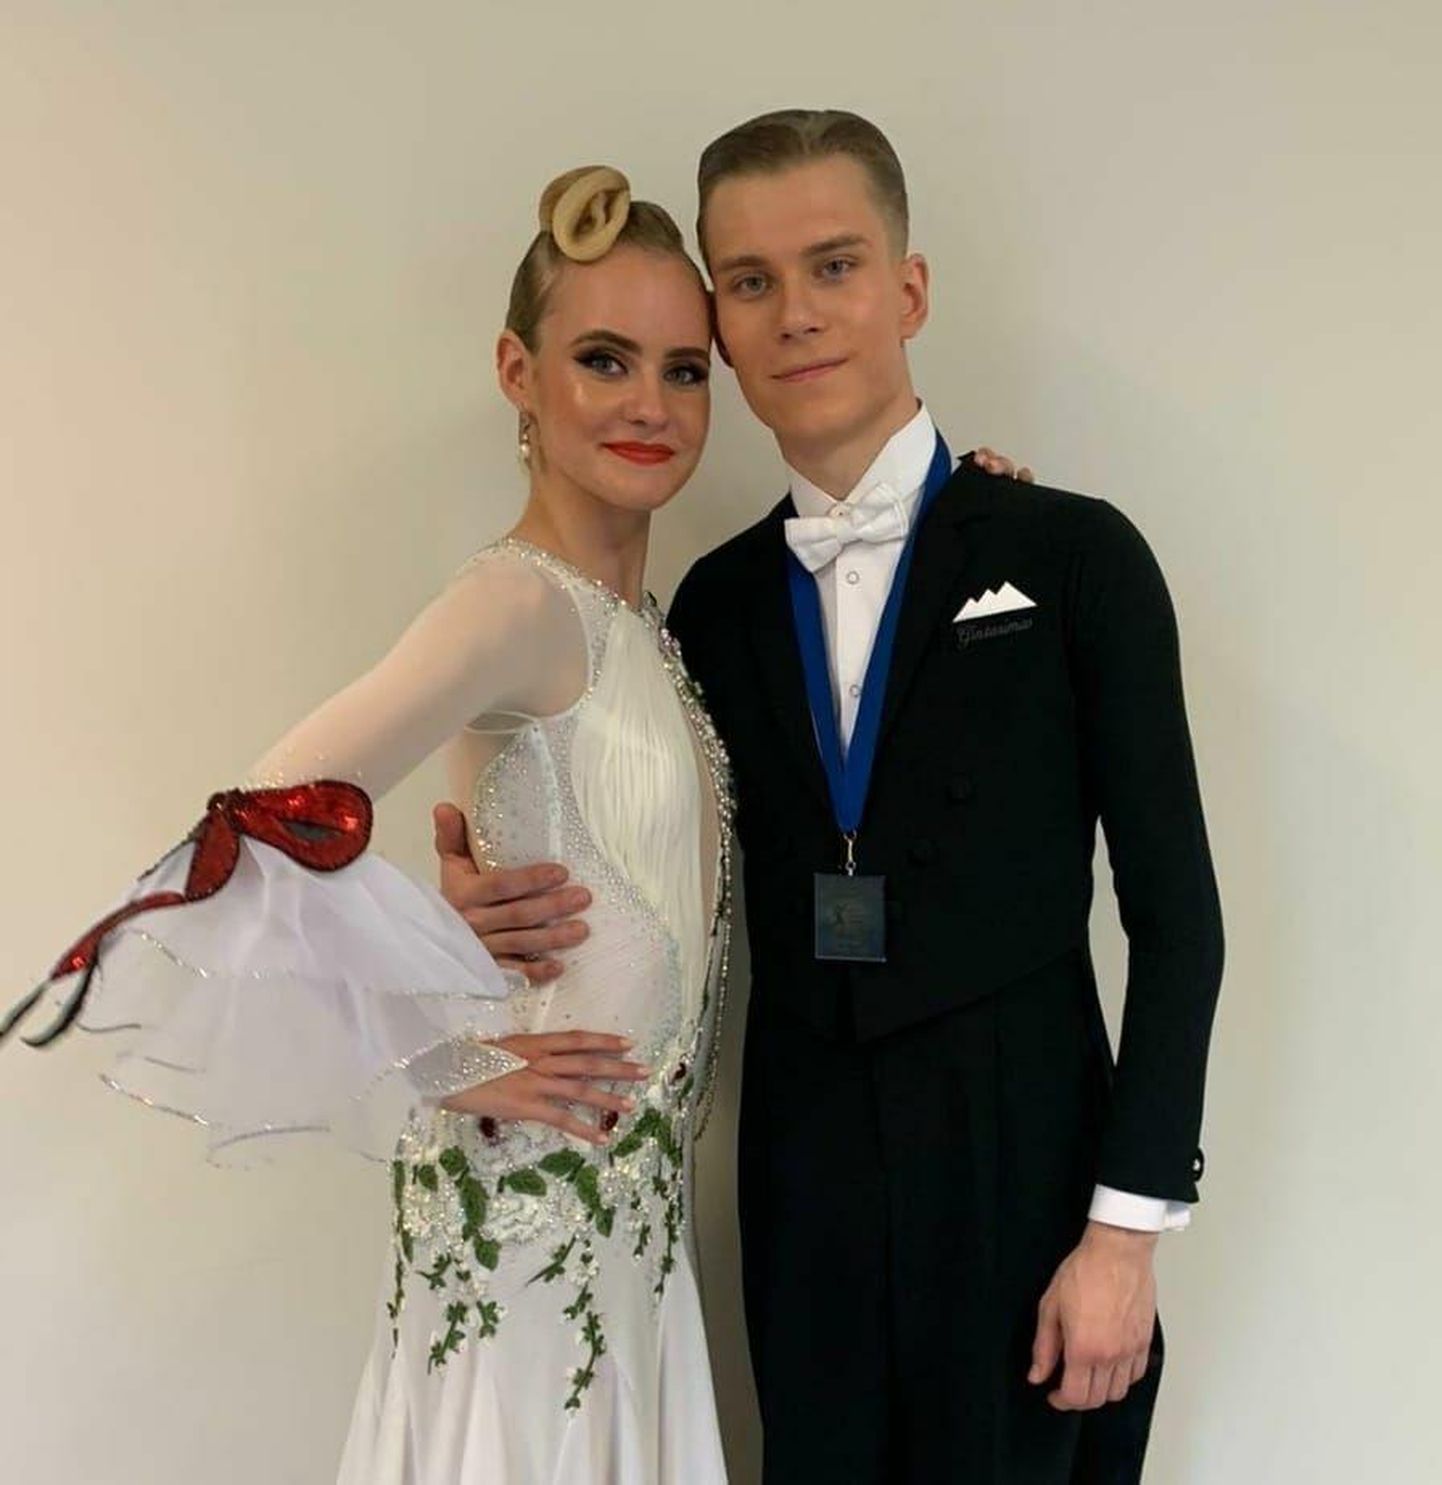 Сара Софи Барябина и гражданин России Алексей Бессонов совсем недавно стали чемпионами мира в классе U21 по стандартному танцу. Фото 2022 года.